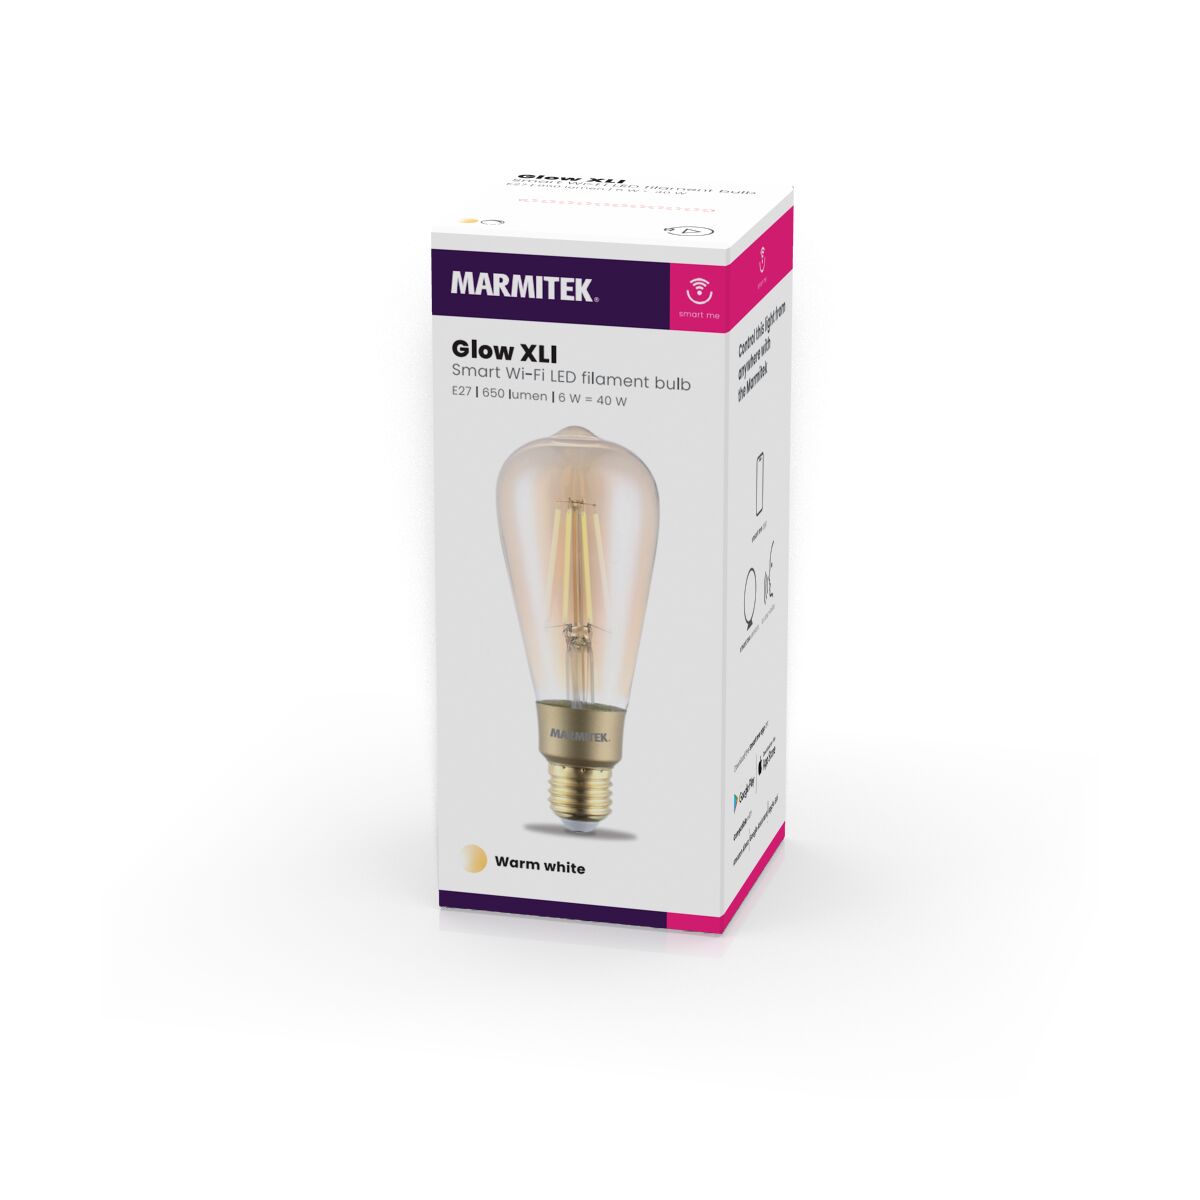 Glow XLI - Filament bulb - E27 - Control via app